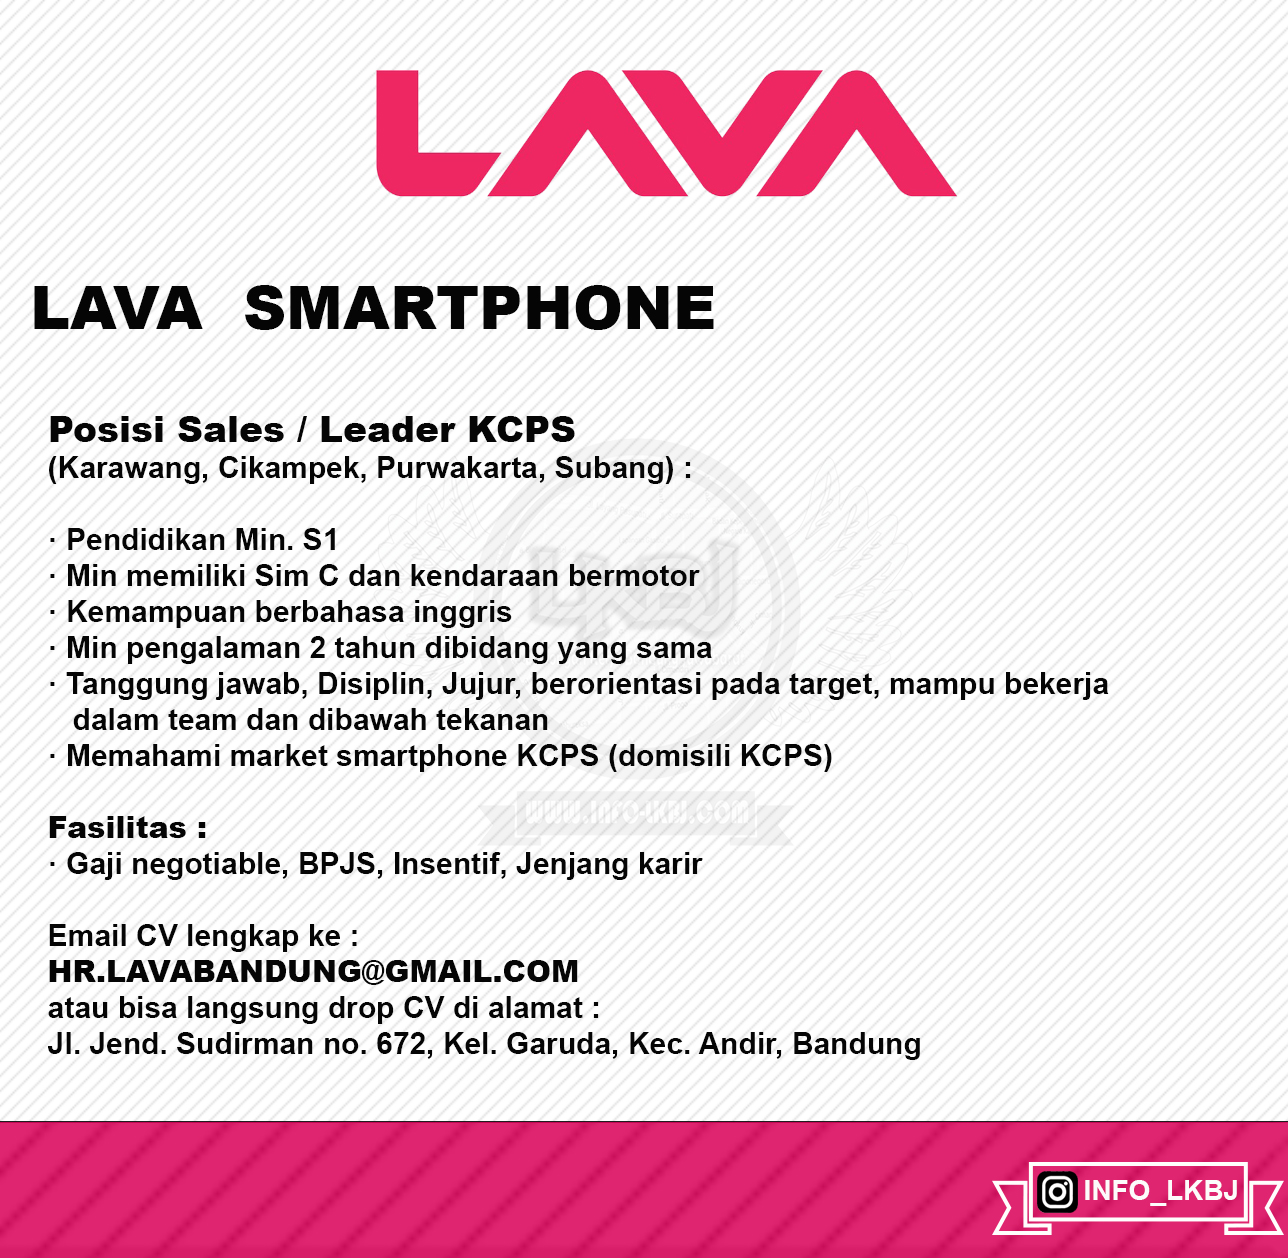 PT. LAVA Mobile Indonesia ( Lava SmartPhone )